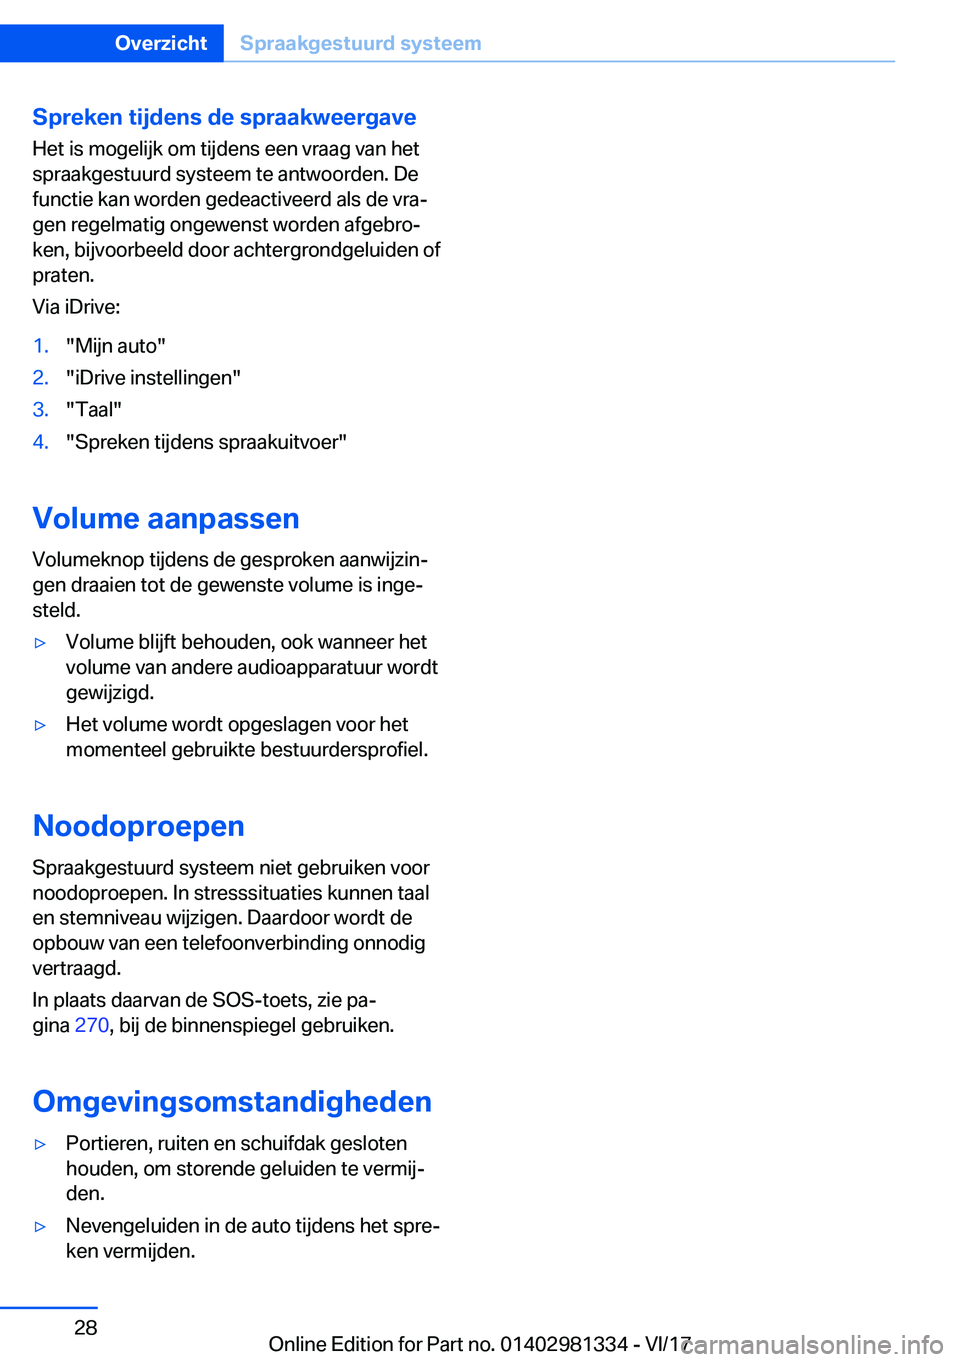 BMW X4 2018  Instructieboekjes (in Dutch) �S�p�r�e�k�e�n��t�i�j�d�e�n�s��d�e��s�p�r�a�a�k�w�e�e�r�g�a�v�e�H�e�t� �i�s� �m�o�g�e�l�i�j�k� �o�m� �t�i�j�d�e�n�s� �e�e�n� �v�r�a�a�g� �v�a�n� �h�e�t
�s�p�r�a�a�k�g�e�s�t�u�u�r�d� �s�y�s�t�e�e�m�